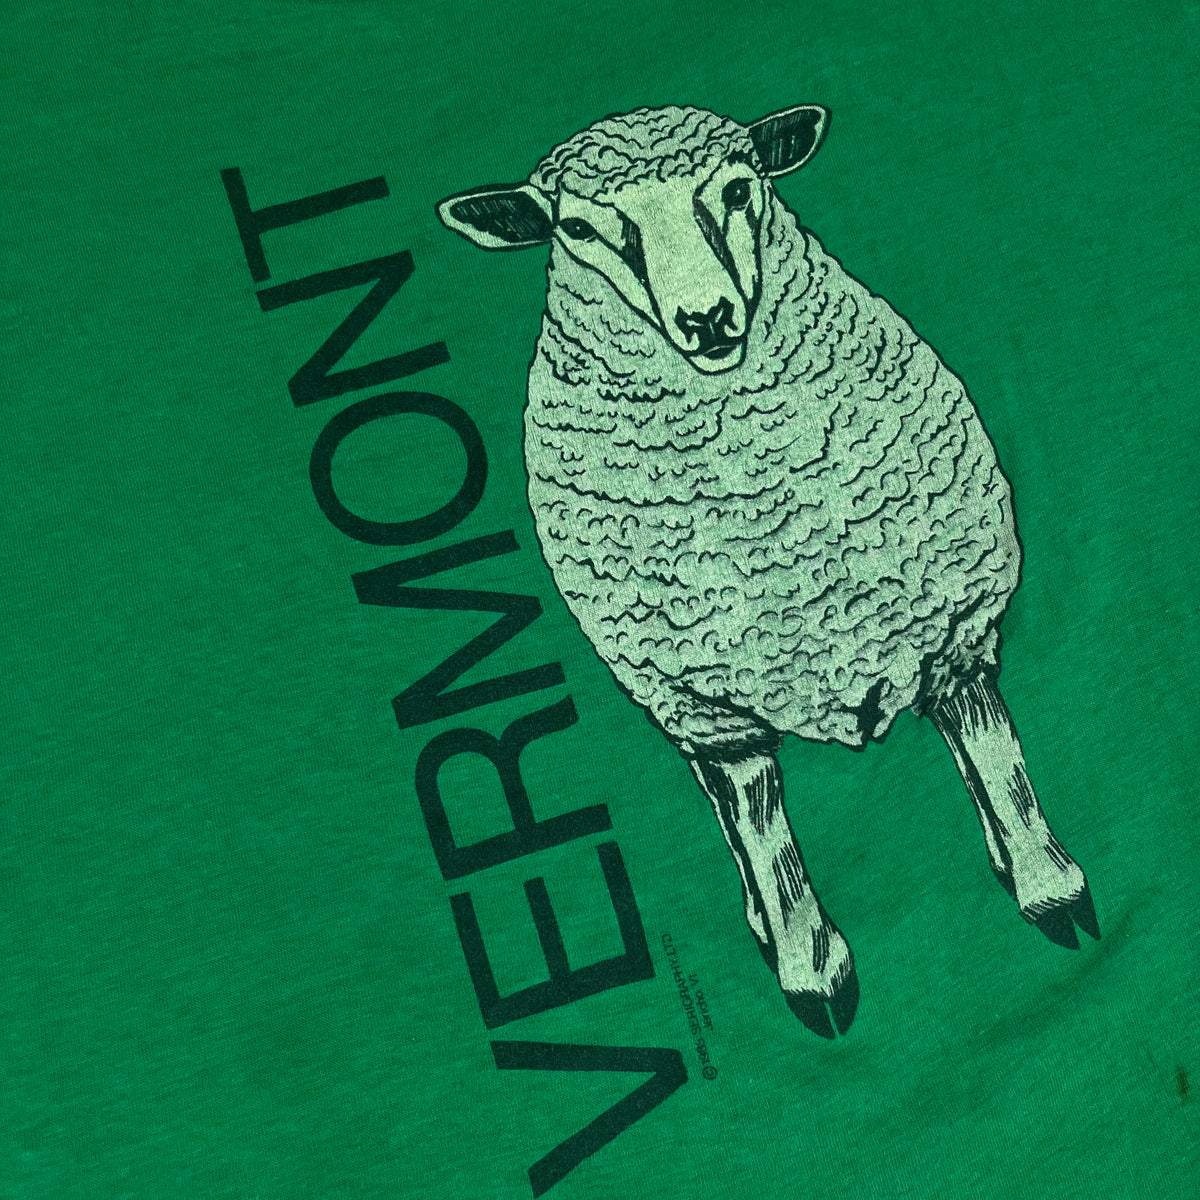 Vintage Vermont &quot;Sheep&quot; T-Shirt